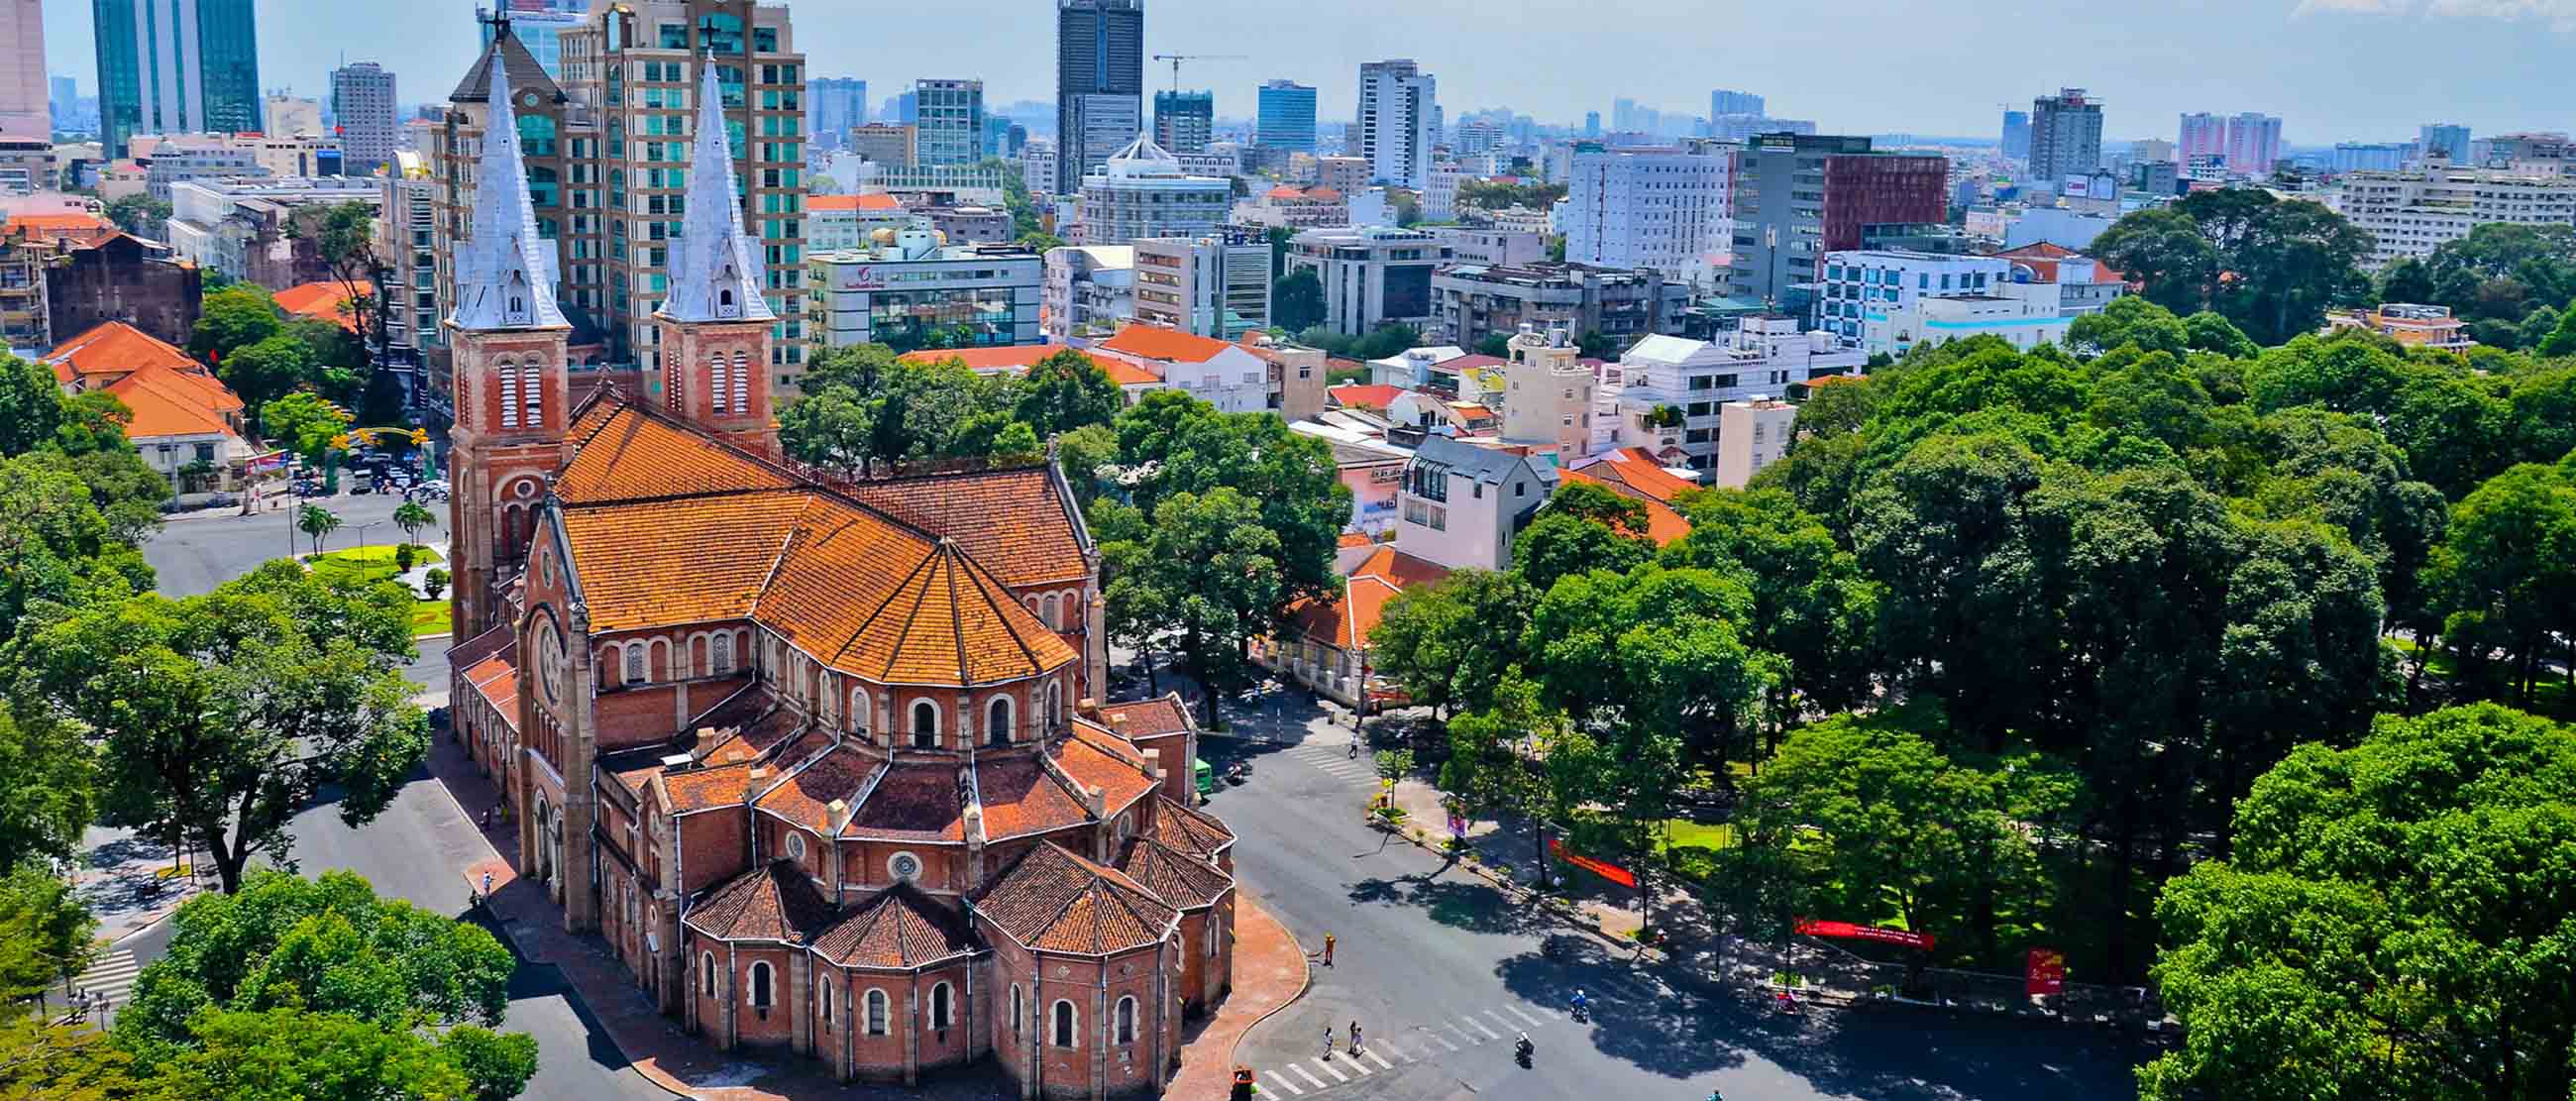 Nhà thờ Đức Bà là một trong những biểu tượng của Thành phố Hồ Chí Minh